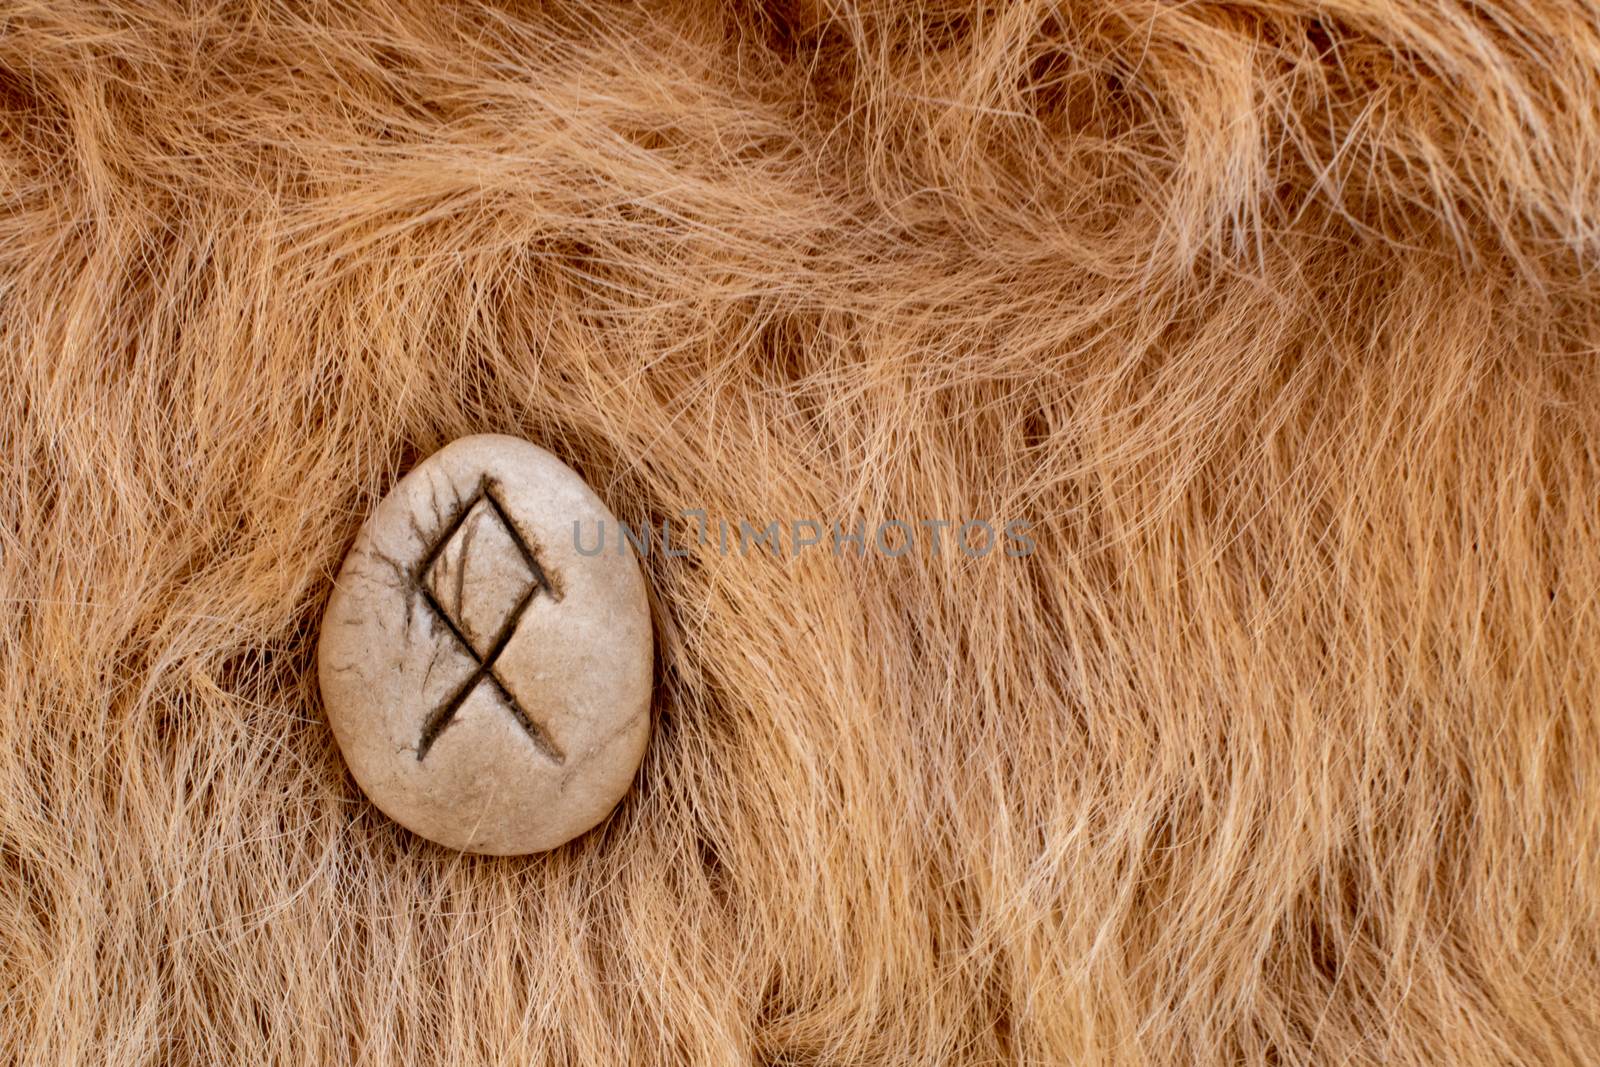 Othila or Othial Nordic stone rune on fur. Letter Ethel of the Viking alphabet.